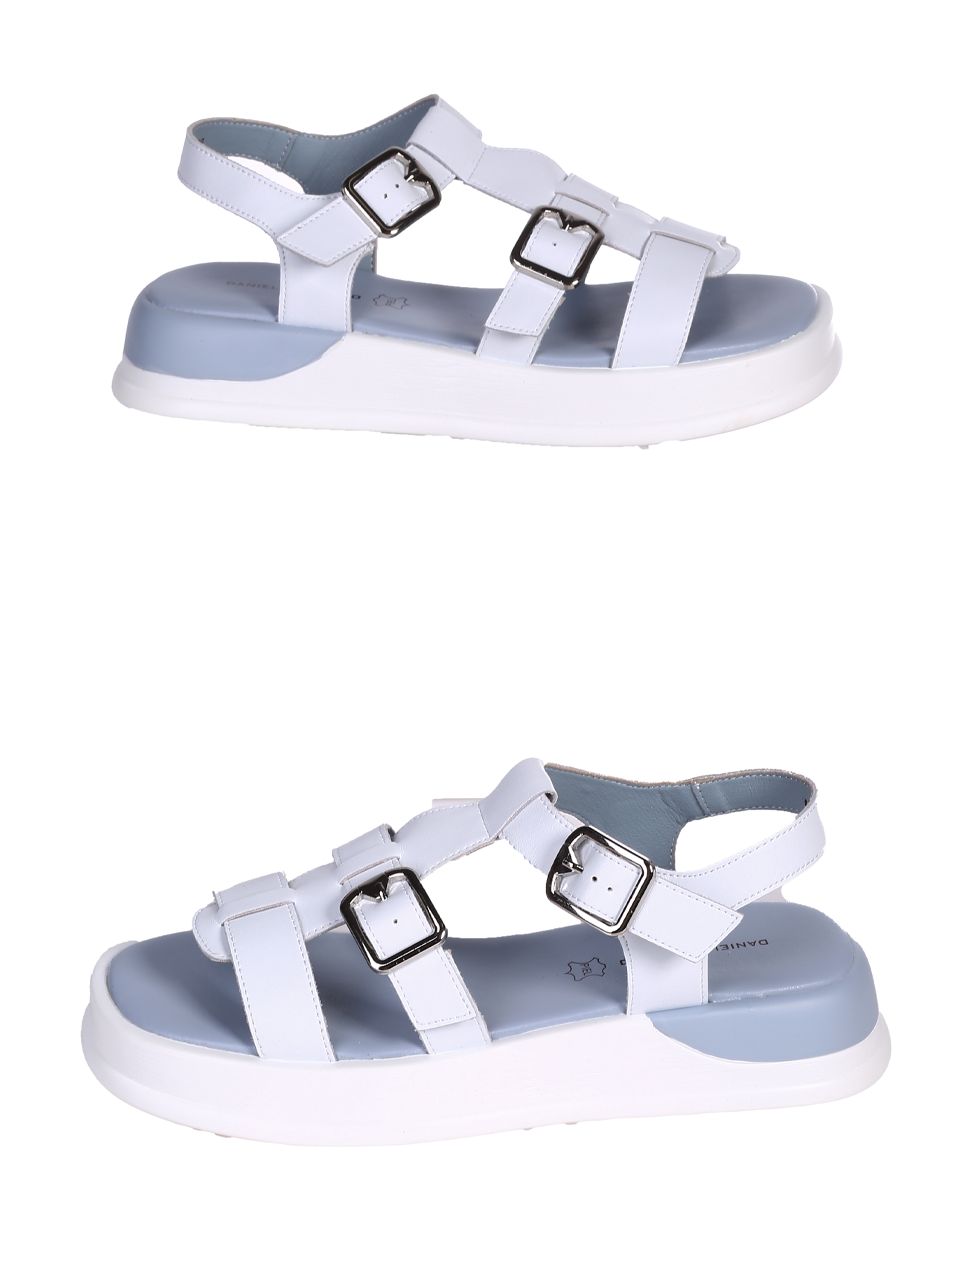 Ежедневни дамски сандали на платформа в бял/син цвят 4AF-24174 white/blue